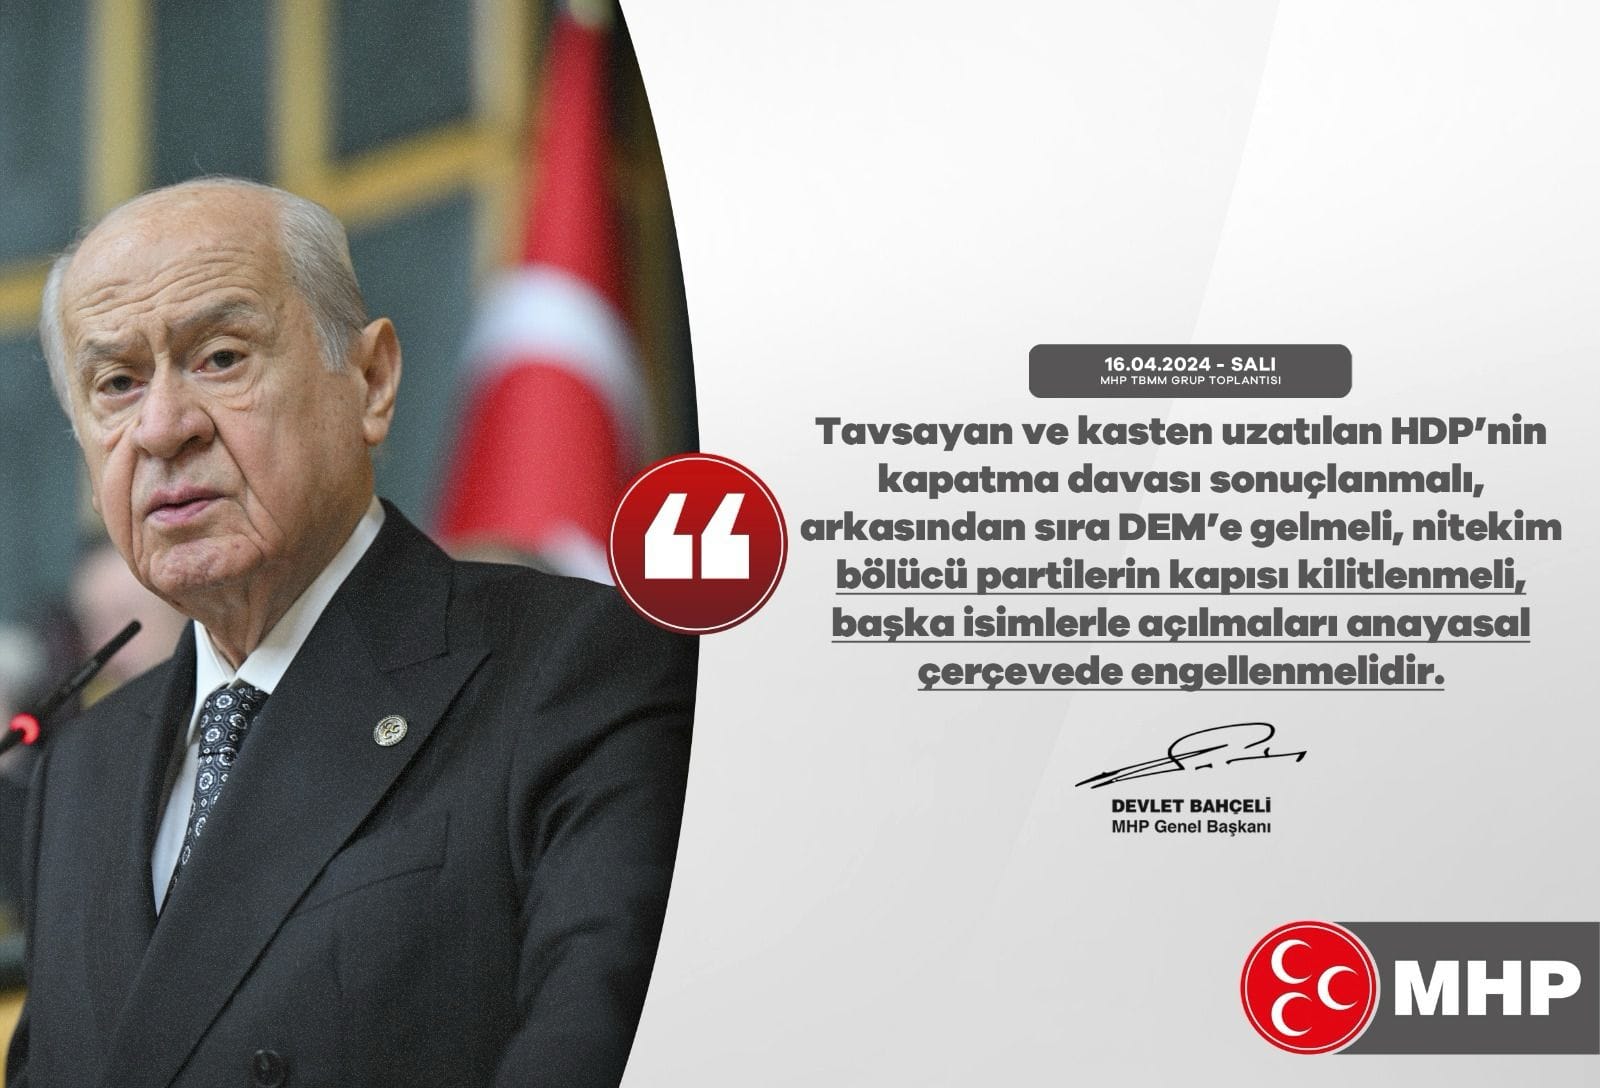 MHP lideri Bahçeli, HDP kapatma davası ve terörle mücadele için anayasal düzenlemeler gerektiğini vurguladı.